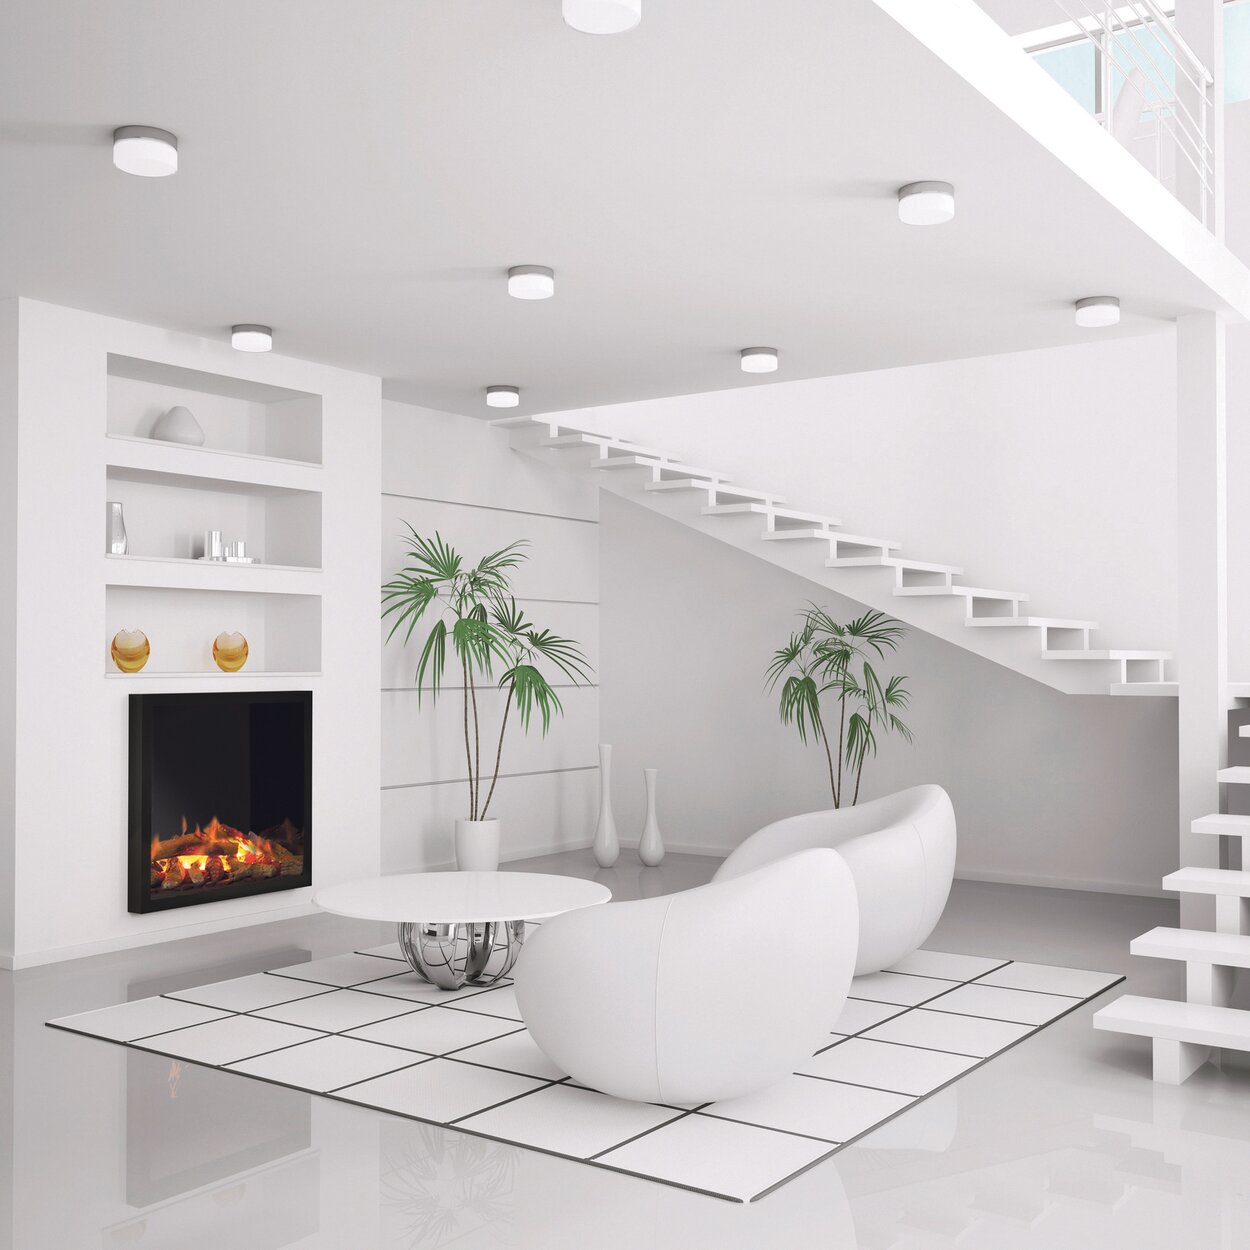 Feu électrique Juneau dans le salon blanc avec escalier et meubles blancs